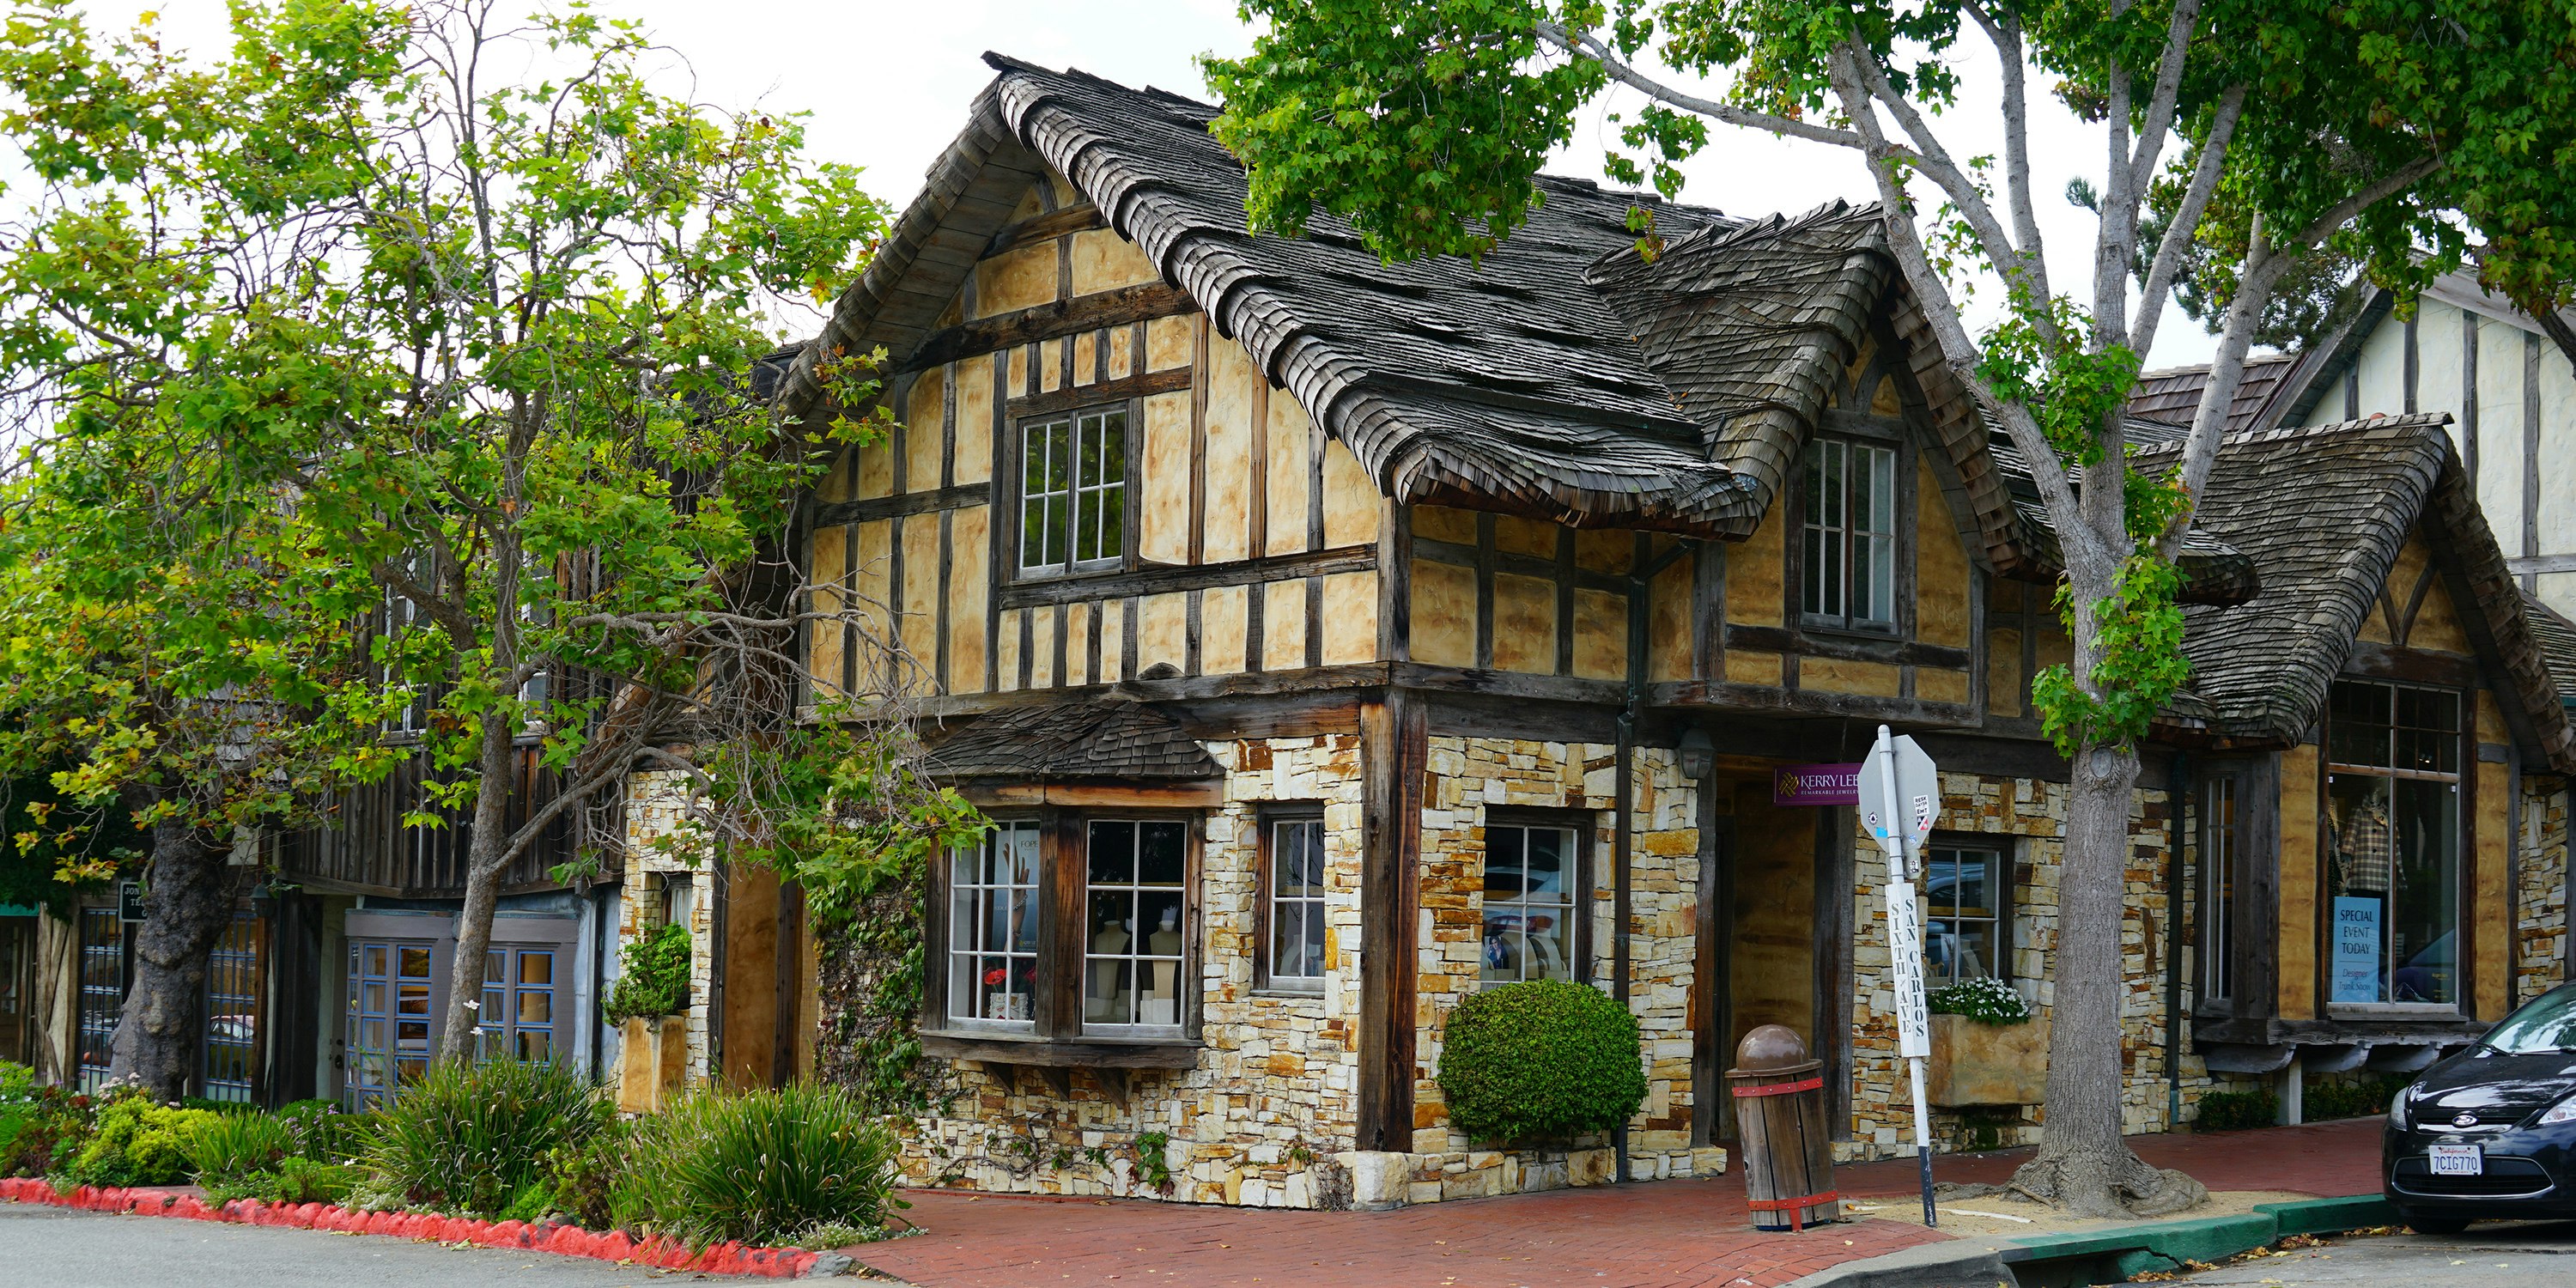 See Fairytale Houses In Carmel California Via